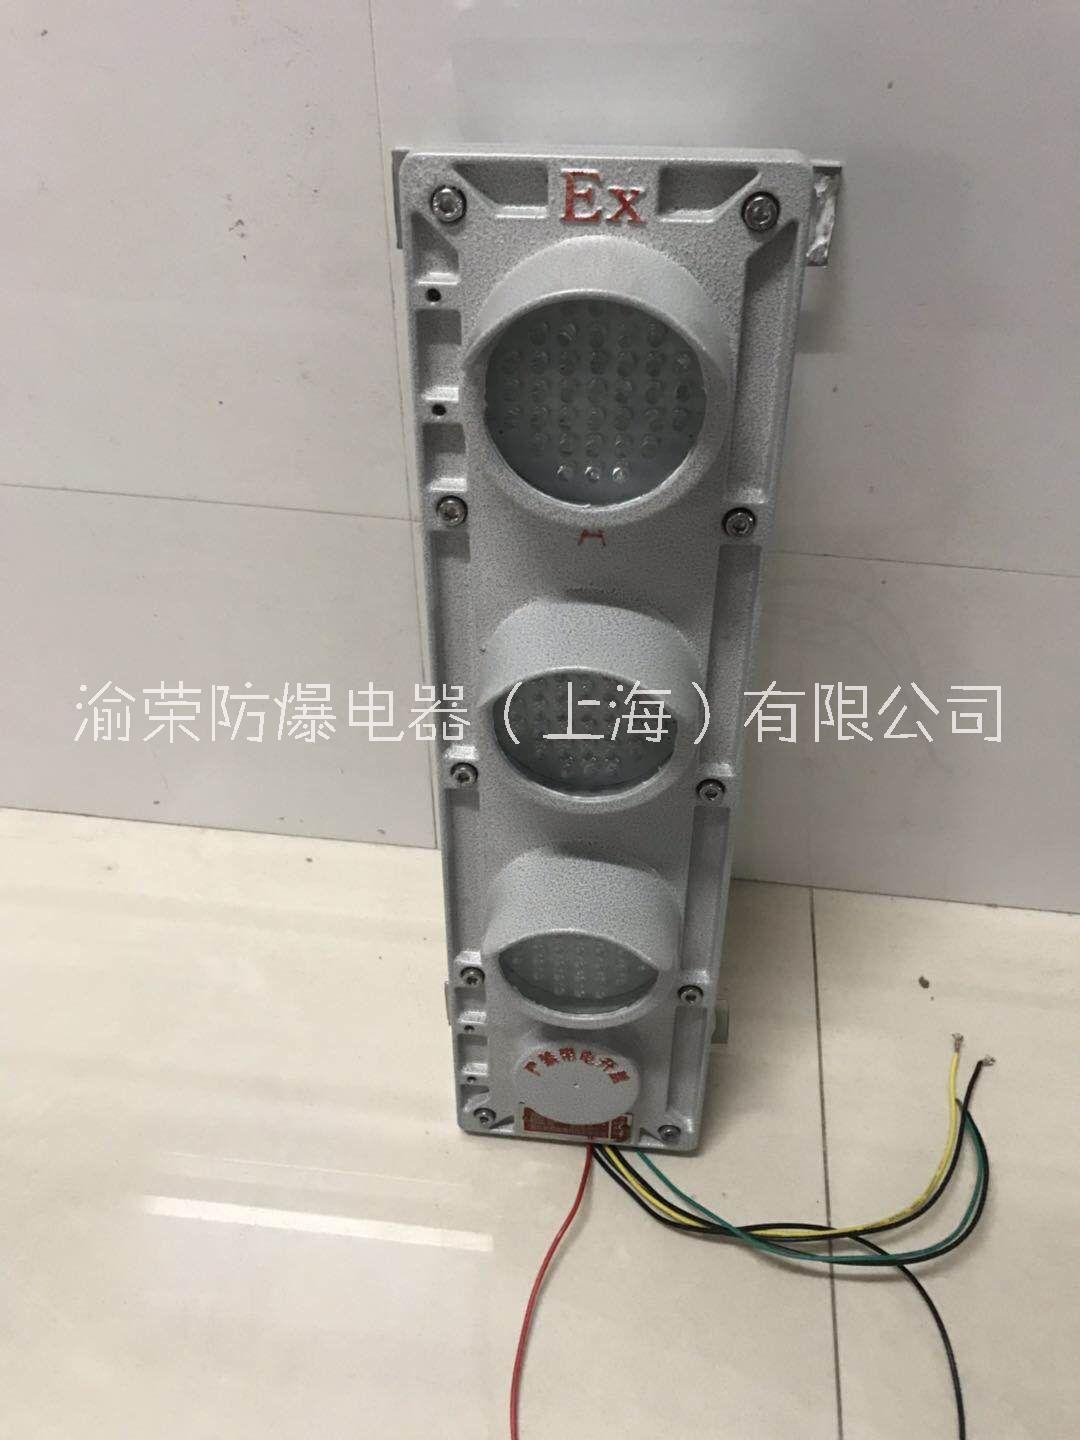 上海渝荣专业LED粉尘防爆滑触线指示灯定做图片